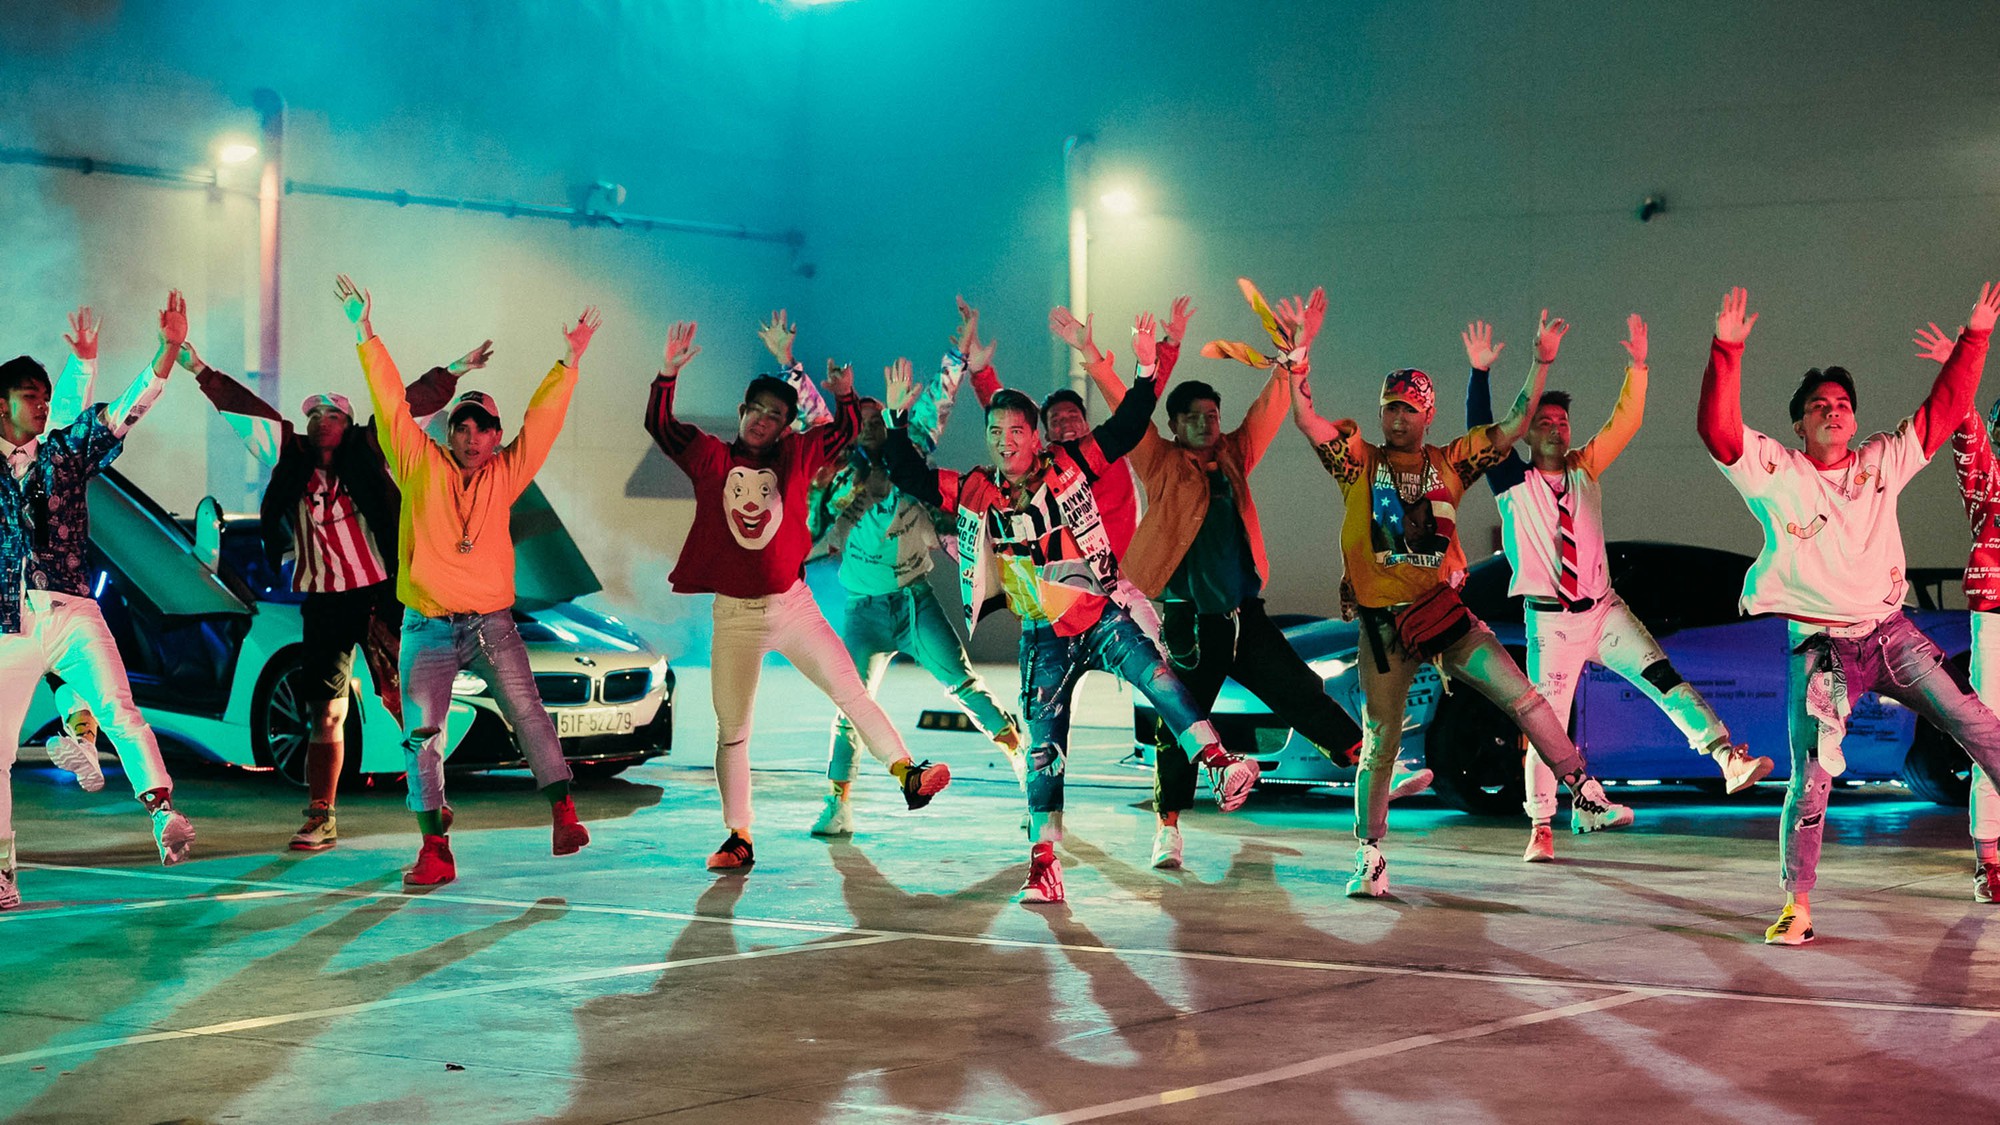 Đàm Vĩnh Hưng chịu chơi mang toàn đồ hiệu, siêu xe khủng vào MV bản Dance, không kém sản phẩm chính - Ảnh 6.